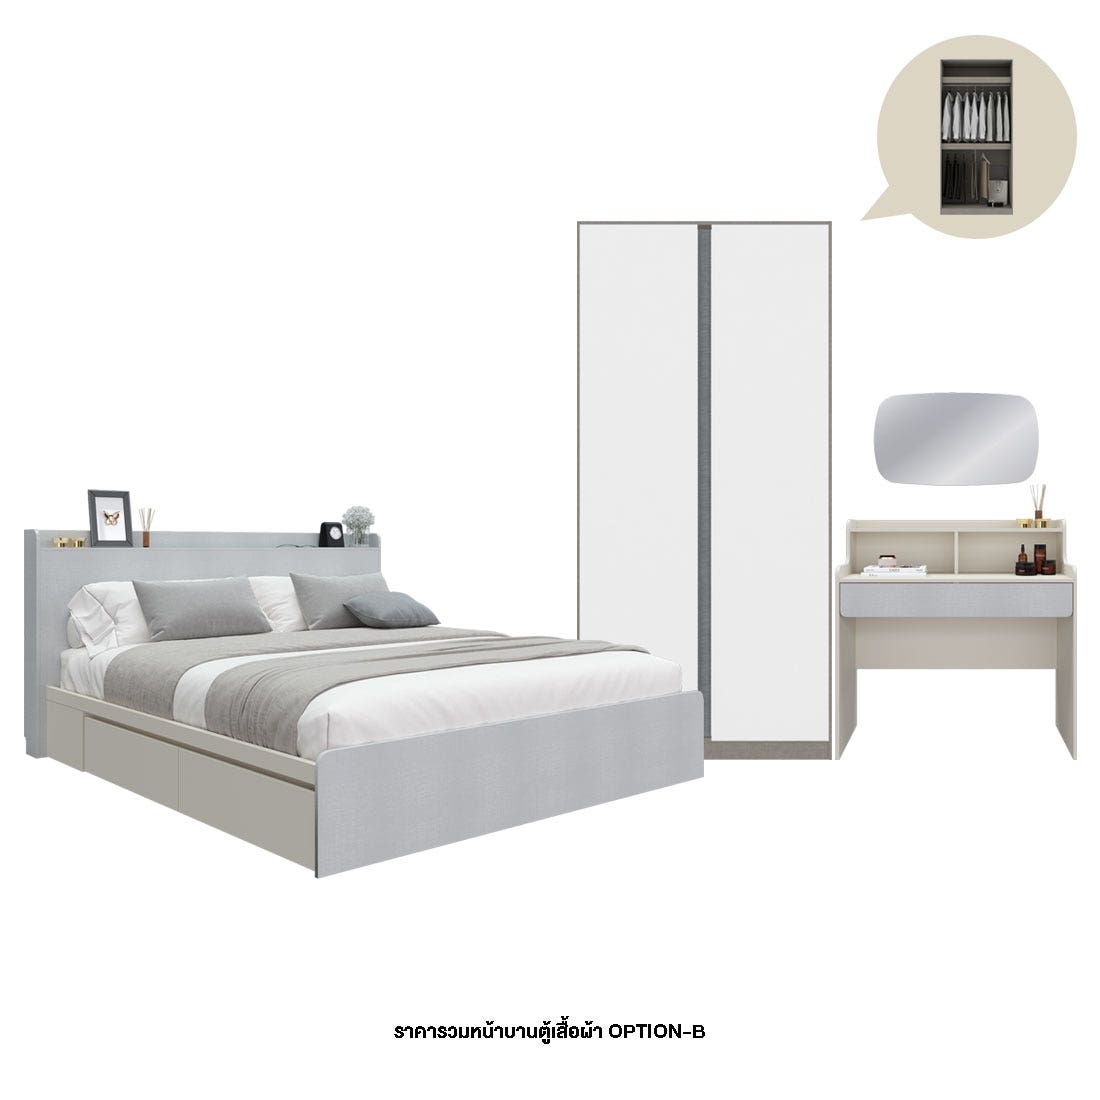 ชุดห้องนอน 6 ฟุต & ตู้ Blox Option B  100 ซม. & โต๊ะเครื่องแป้ง และกระจกรุ่น Aiko สีขาว01